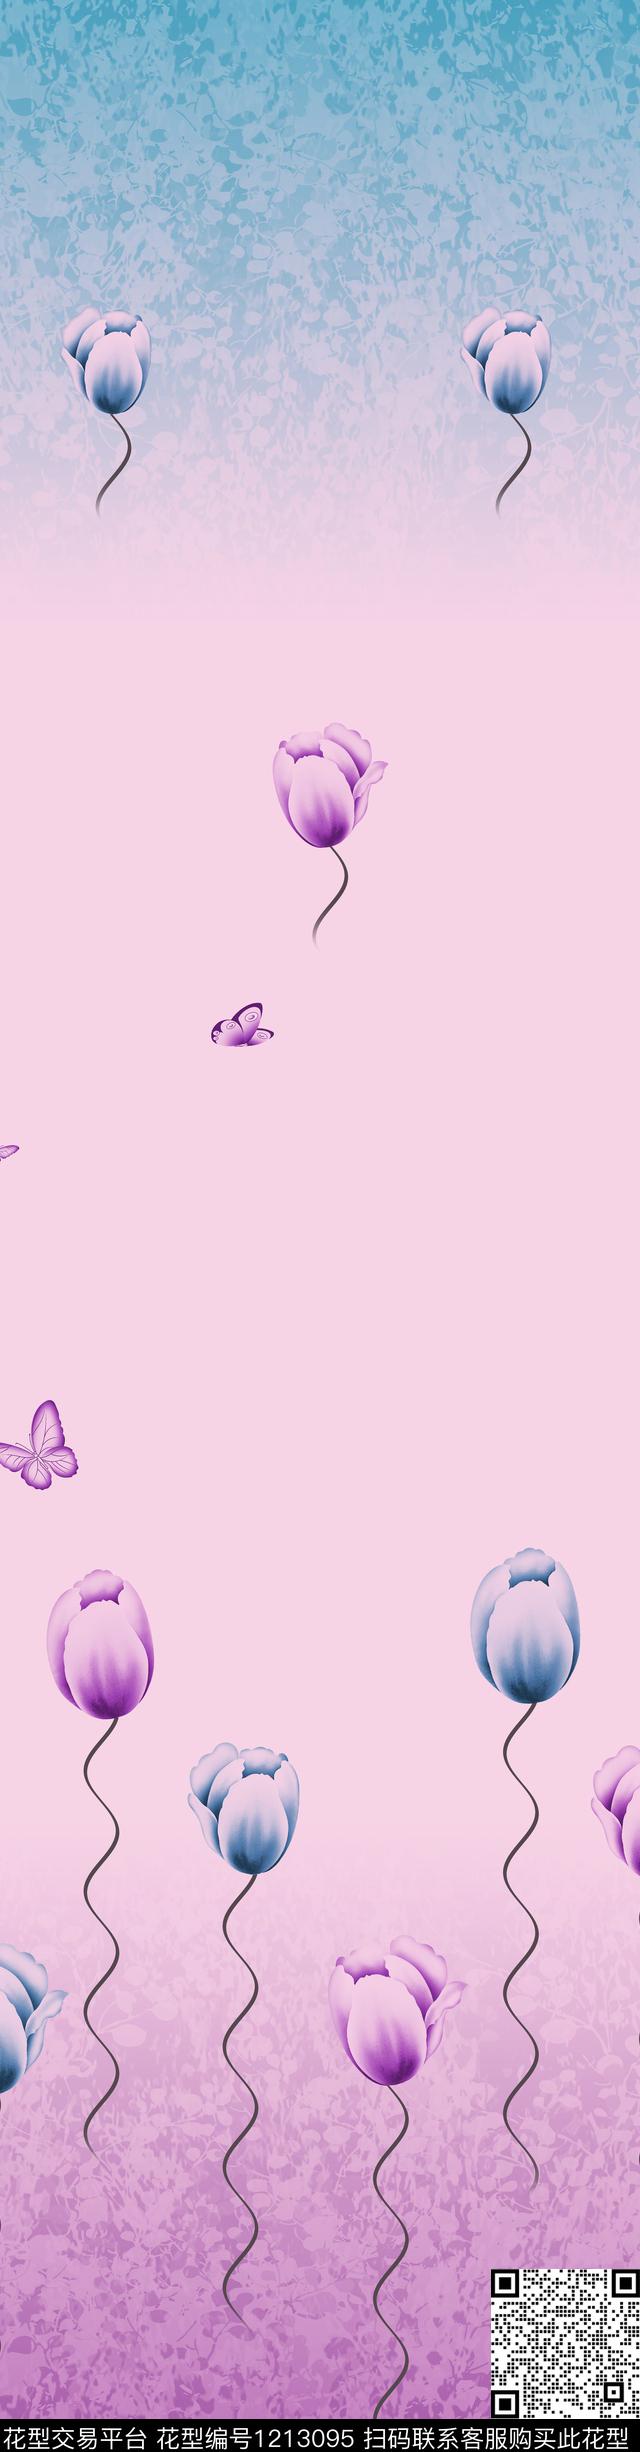 rscwl004.jpg - 1213095 - 郁金香 风景景观 花卉 - 传统印花花型 － 窗帘花型设计 － 瓦栏